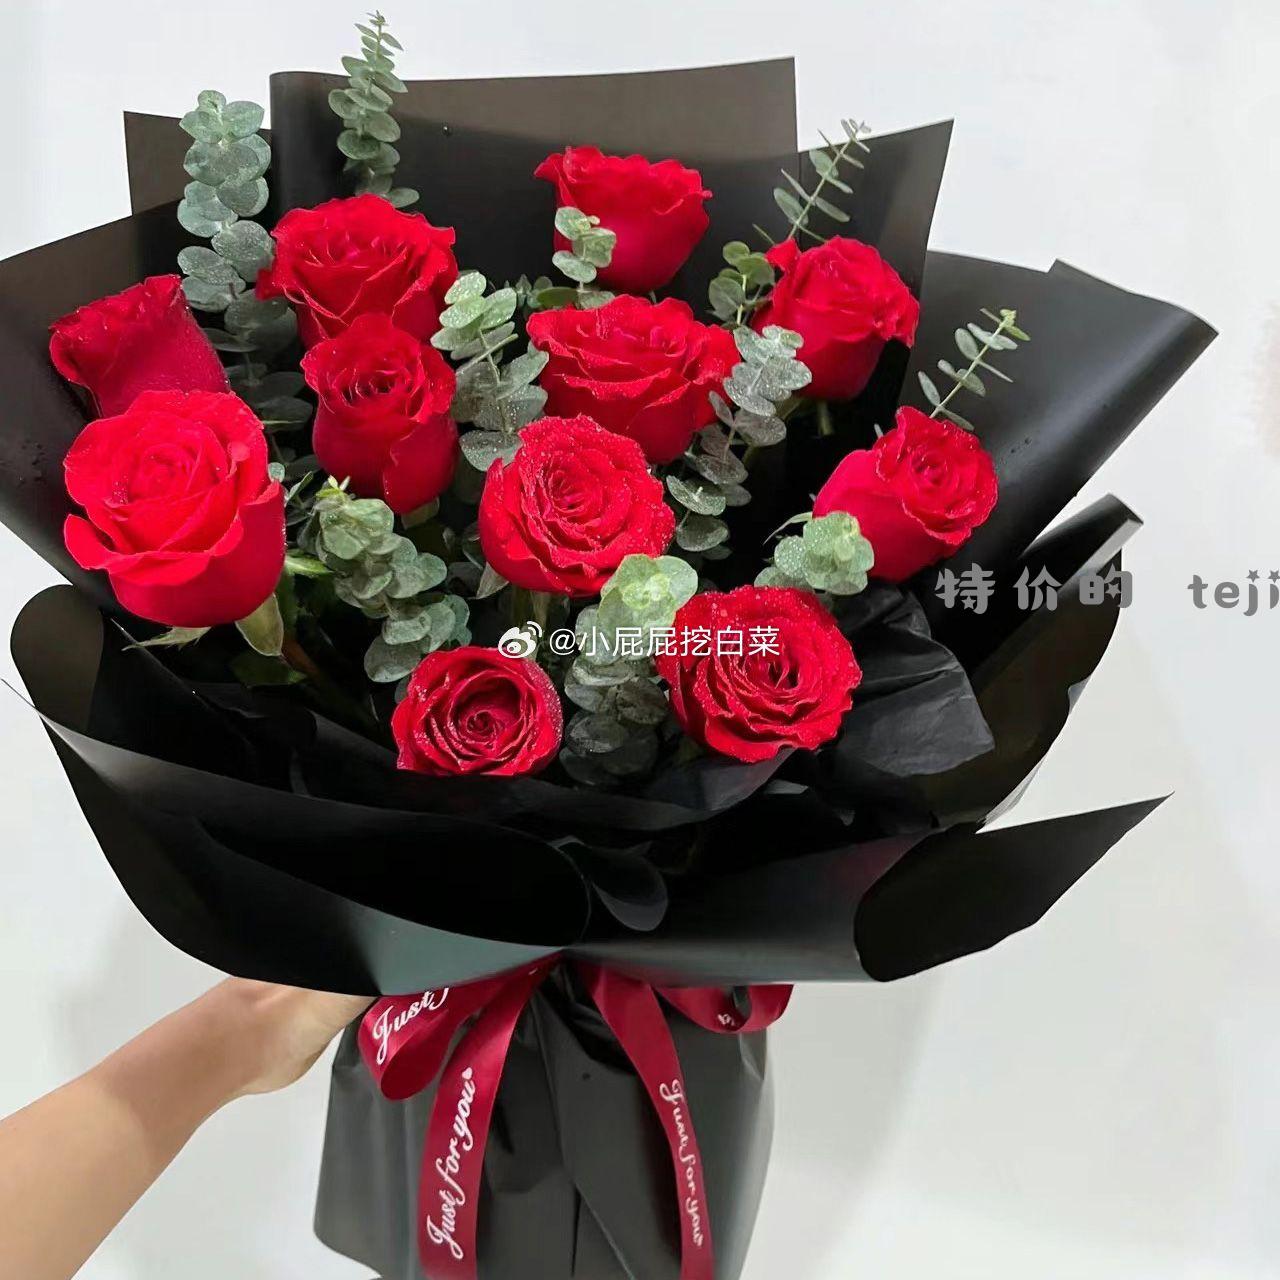 红玫瑰 15支+5支尤加利叶 9.9 混搭红玫瑰鲜花花束送人云南直发鲜花真花家庭水培插花无包装 - 特价的